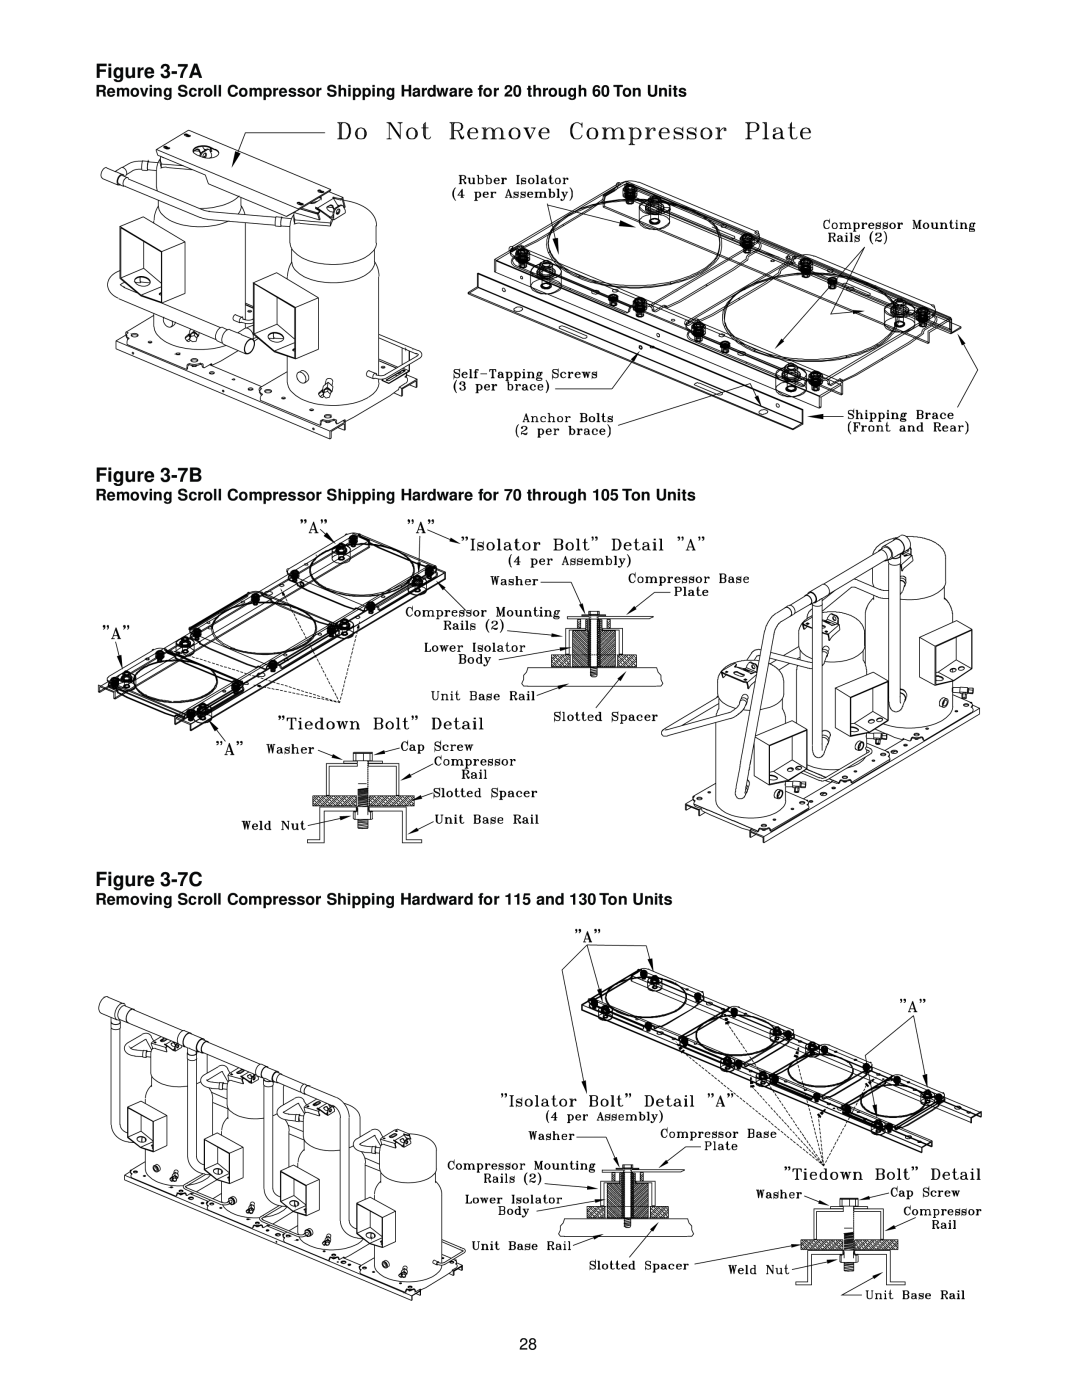 Trane RT-SVX10C-EN specifications 7A, 7B, 7C 